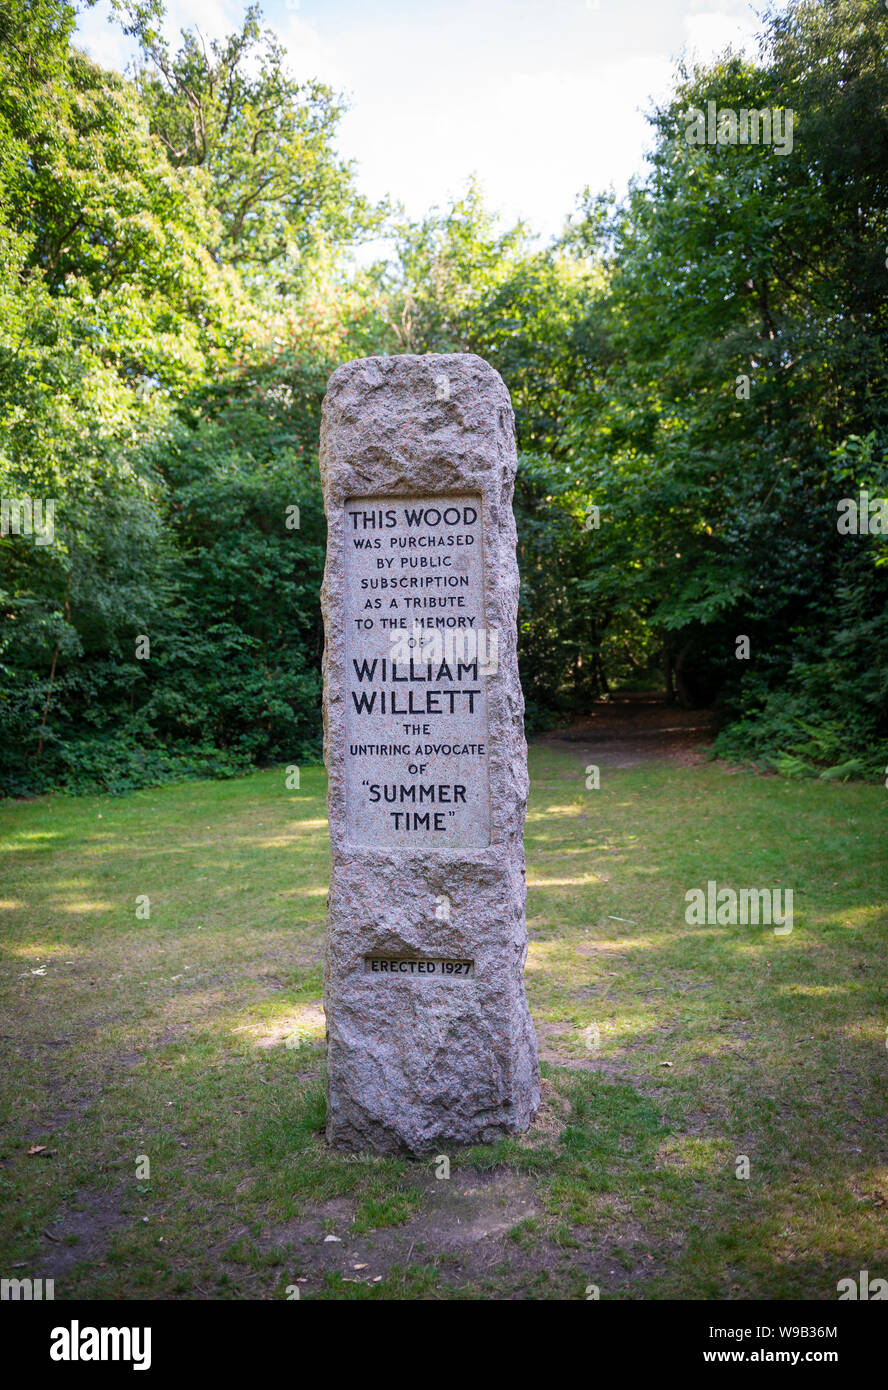 Die protagonistin Für die Sommerzeit William Willett memorial Sonnenuhr in Petts Wood, Kent, Großbritannien Stockfoto